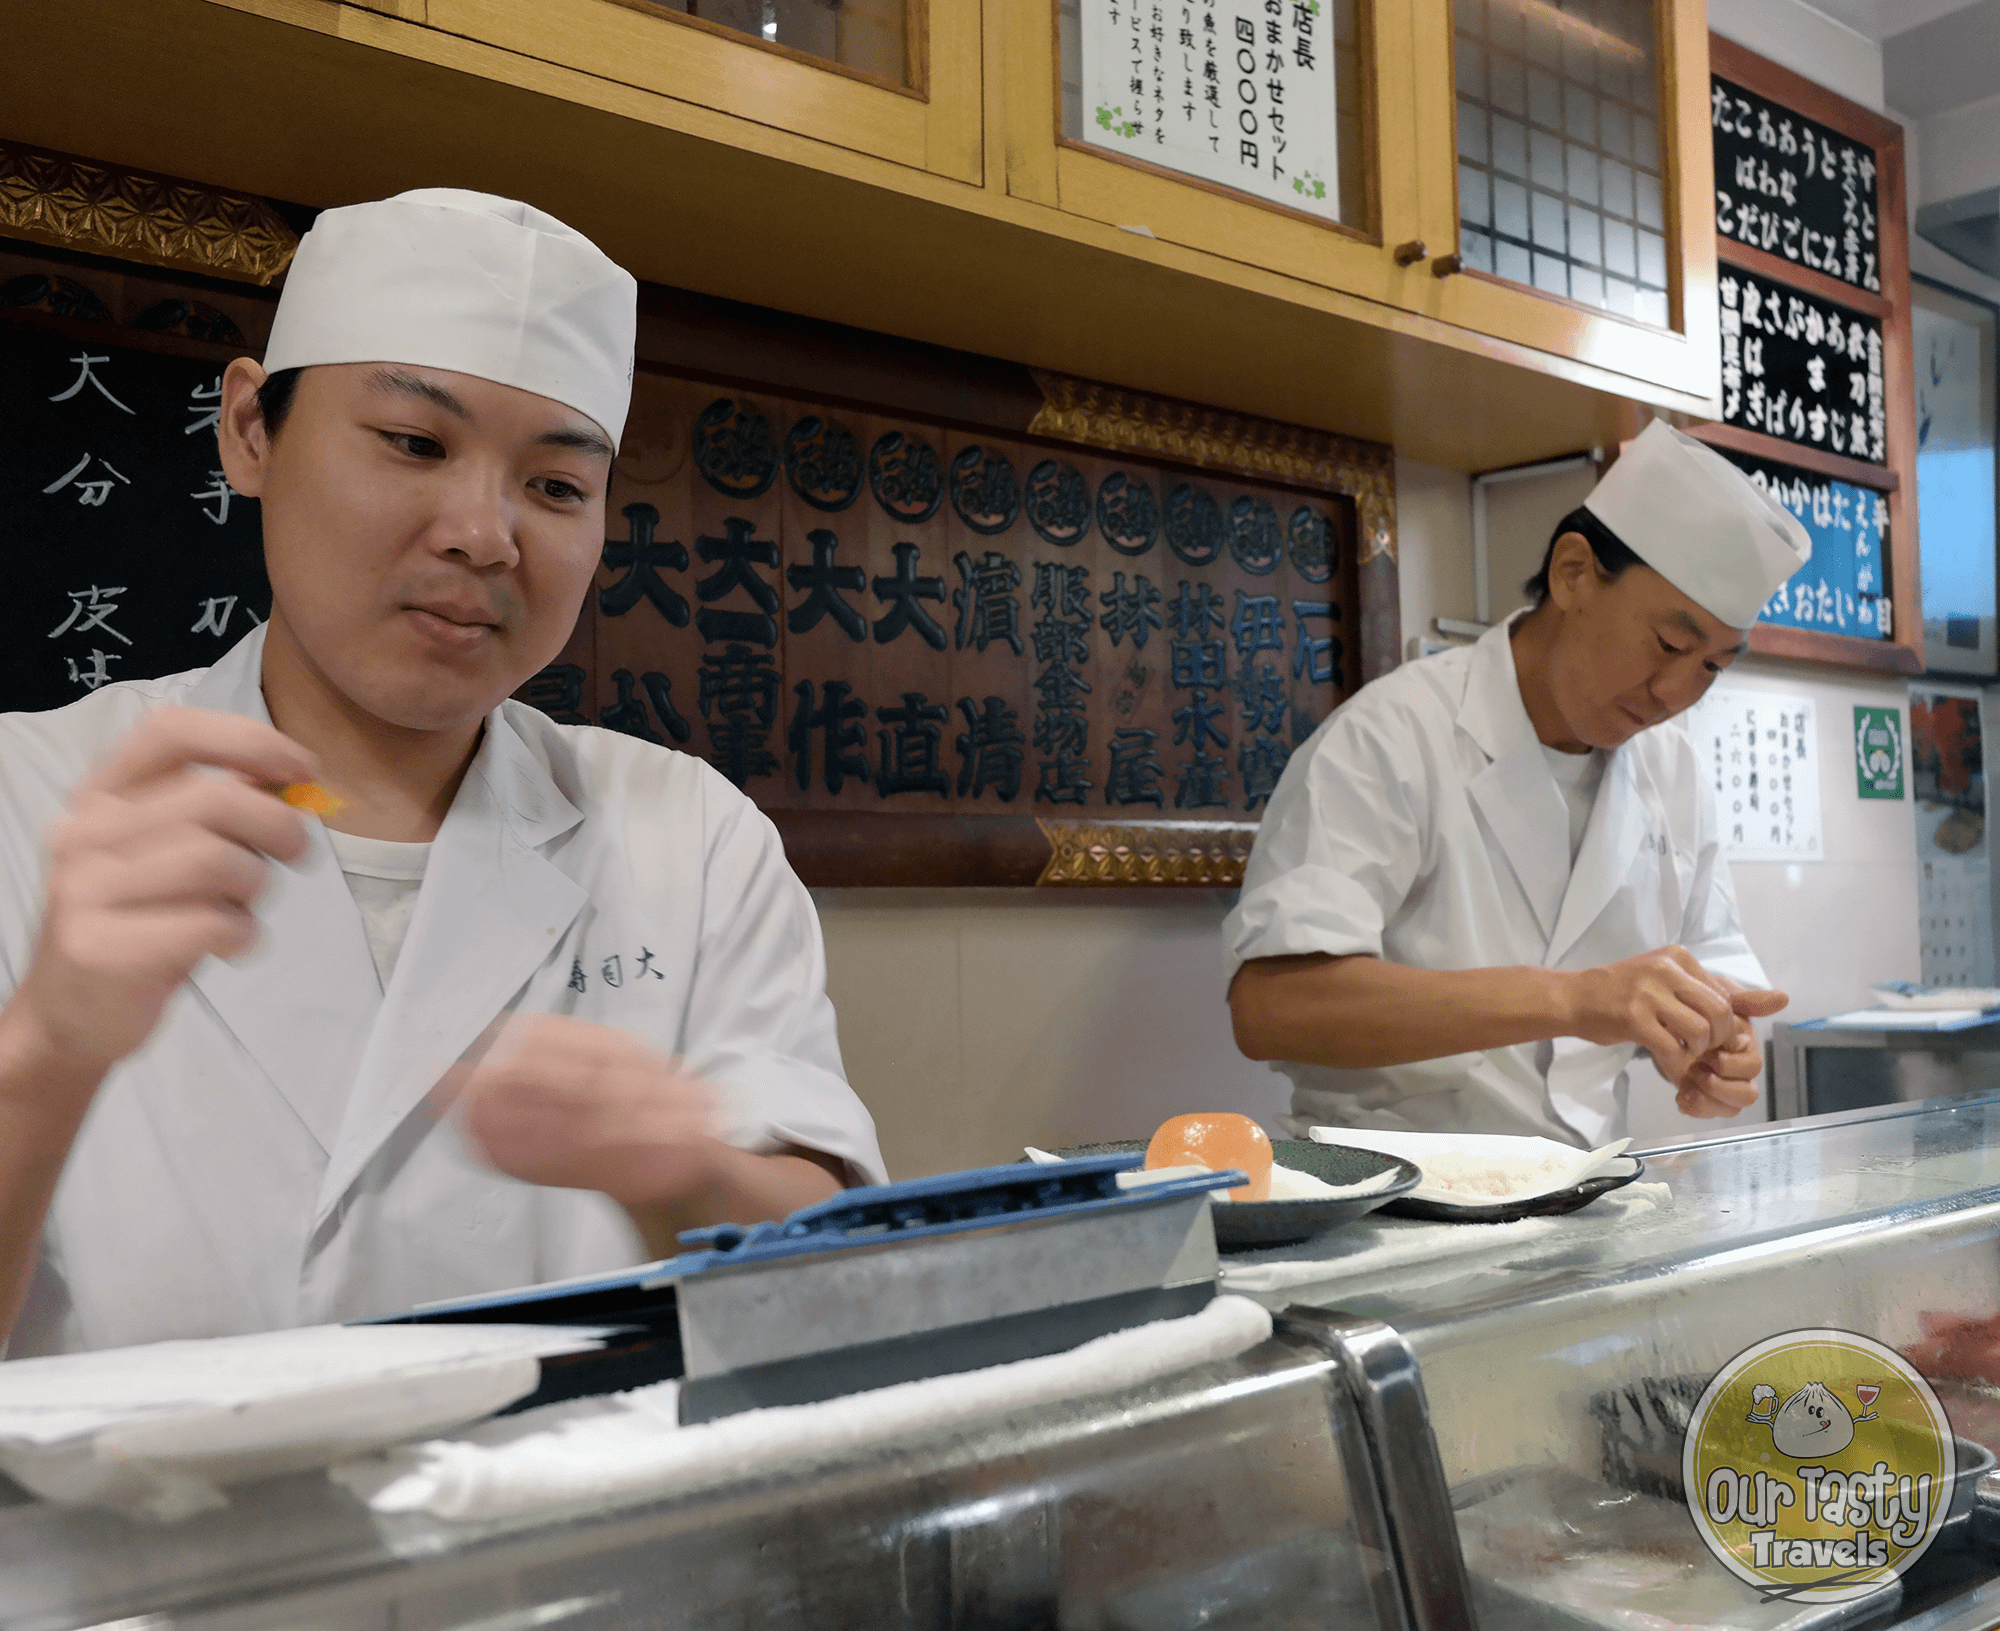 Sushi Chefs Sushi Dai at the Tsukiji Fish Market in Tokyo, Japan - ourtastytravels.com